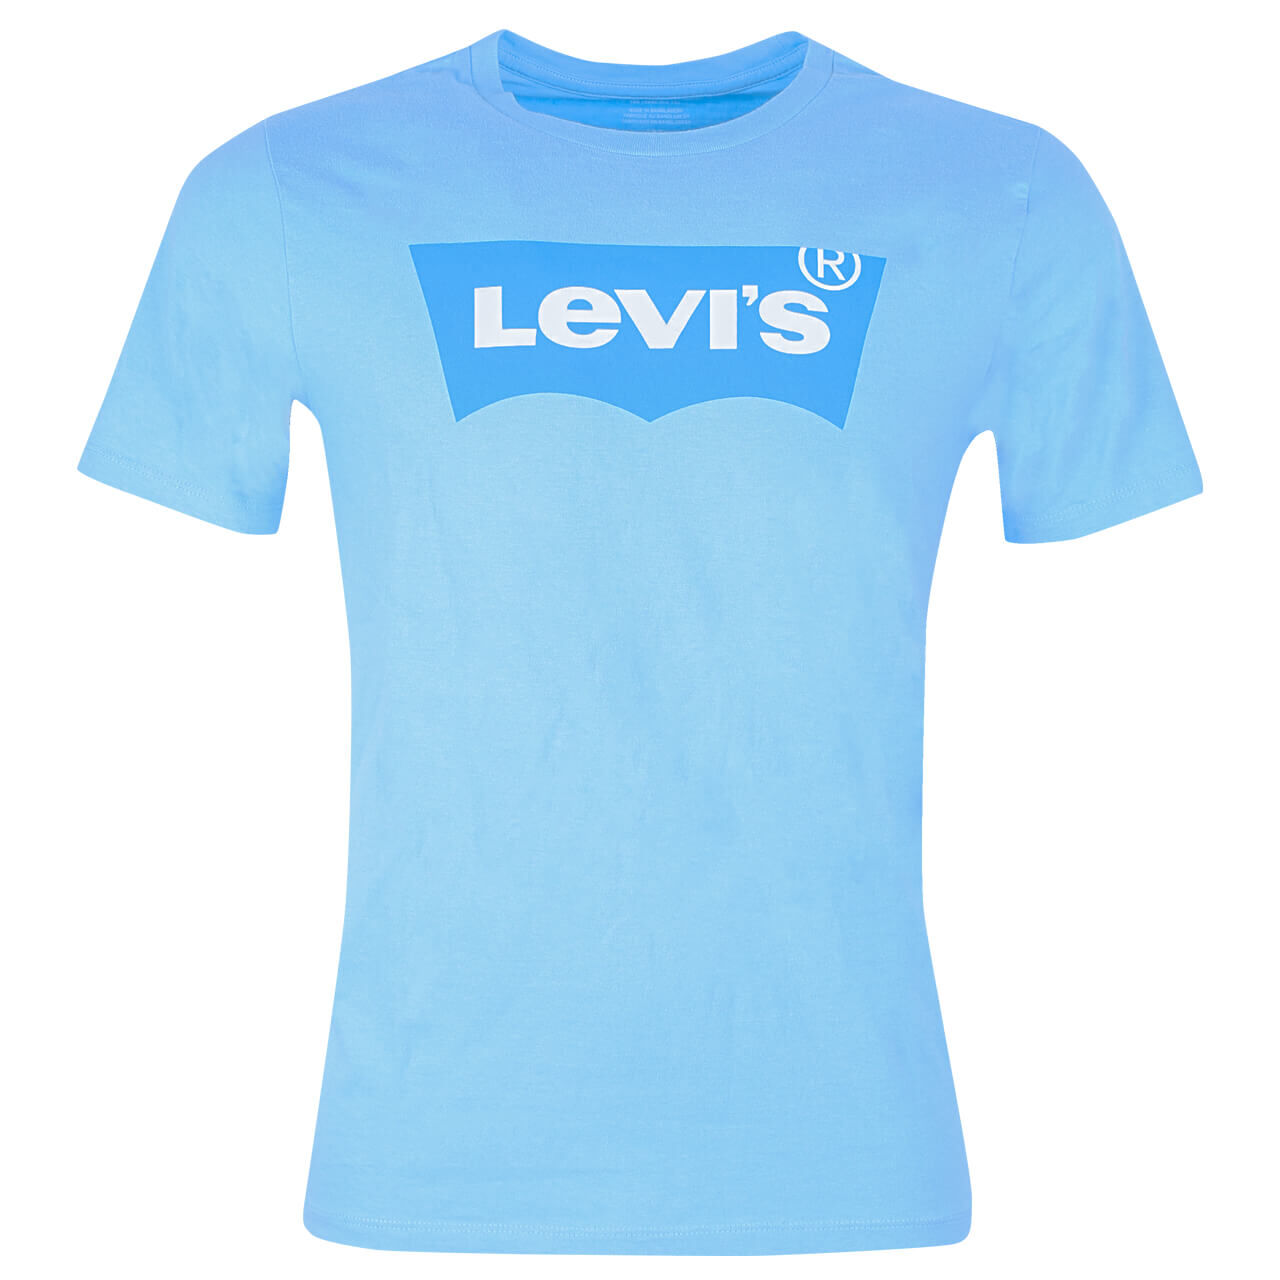 Levis Logo T-Shirt für Herren in Blau mit Schriftzug, FarbNr.: 1041